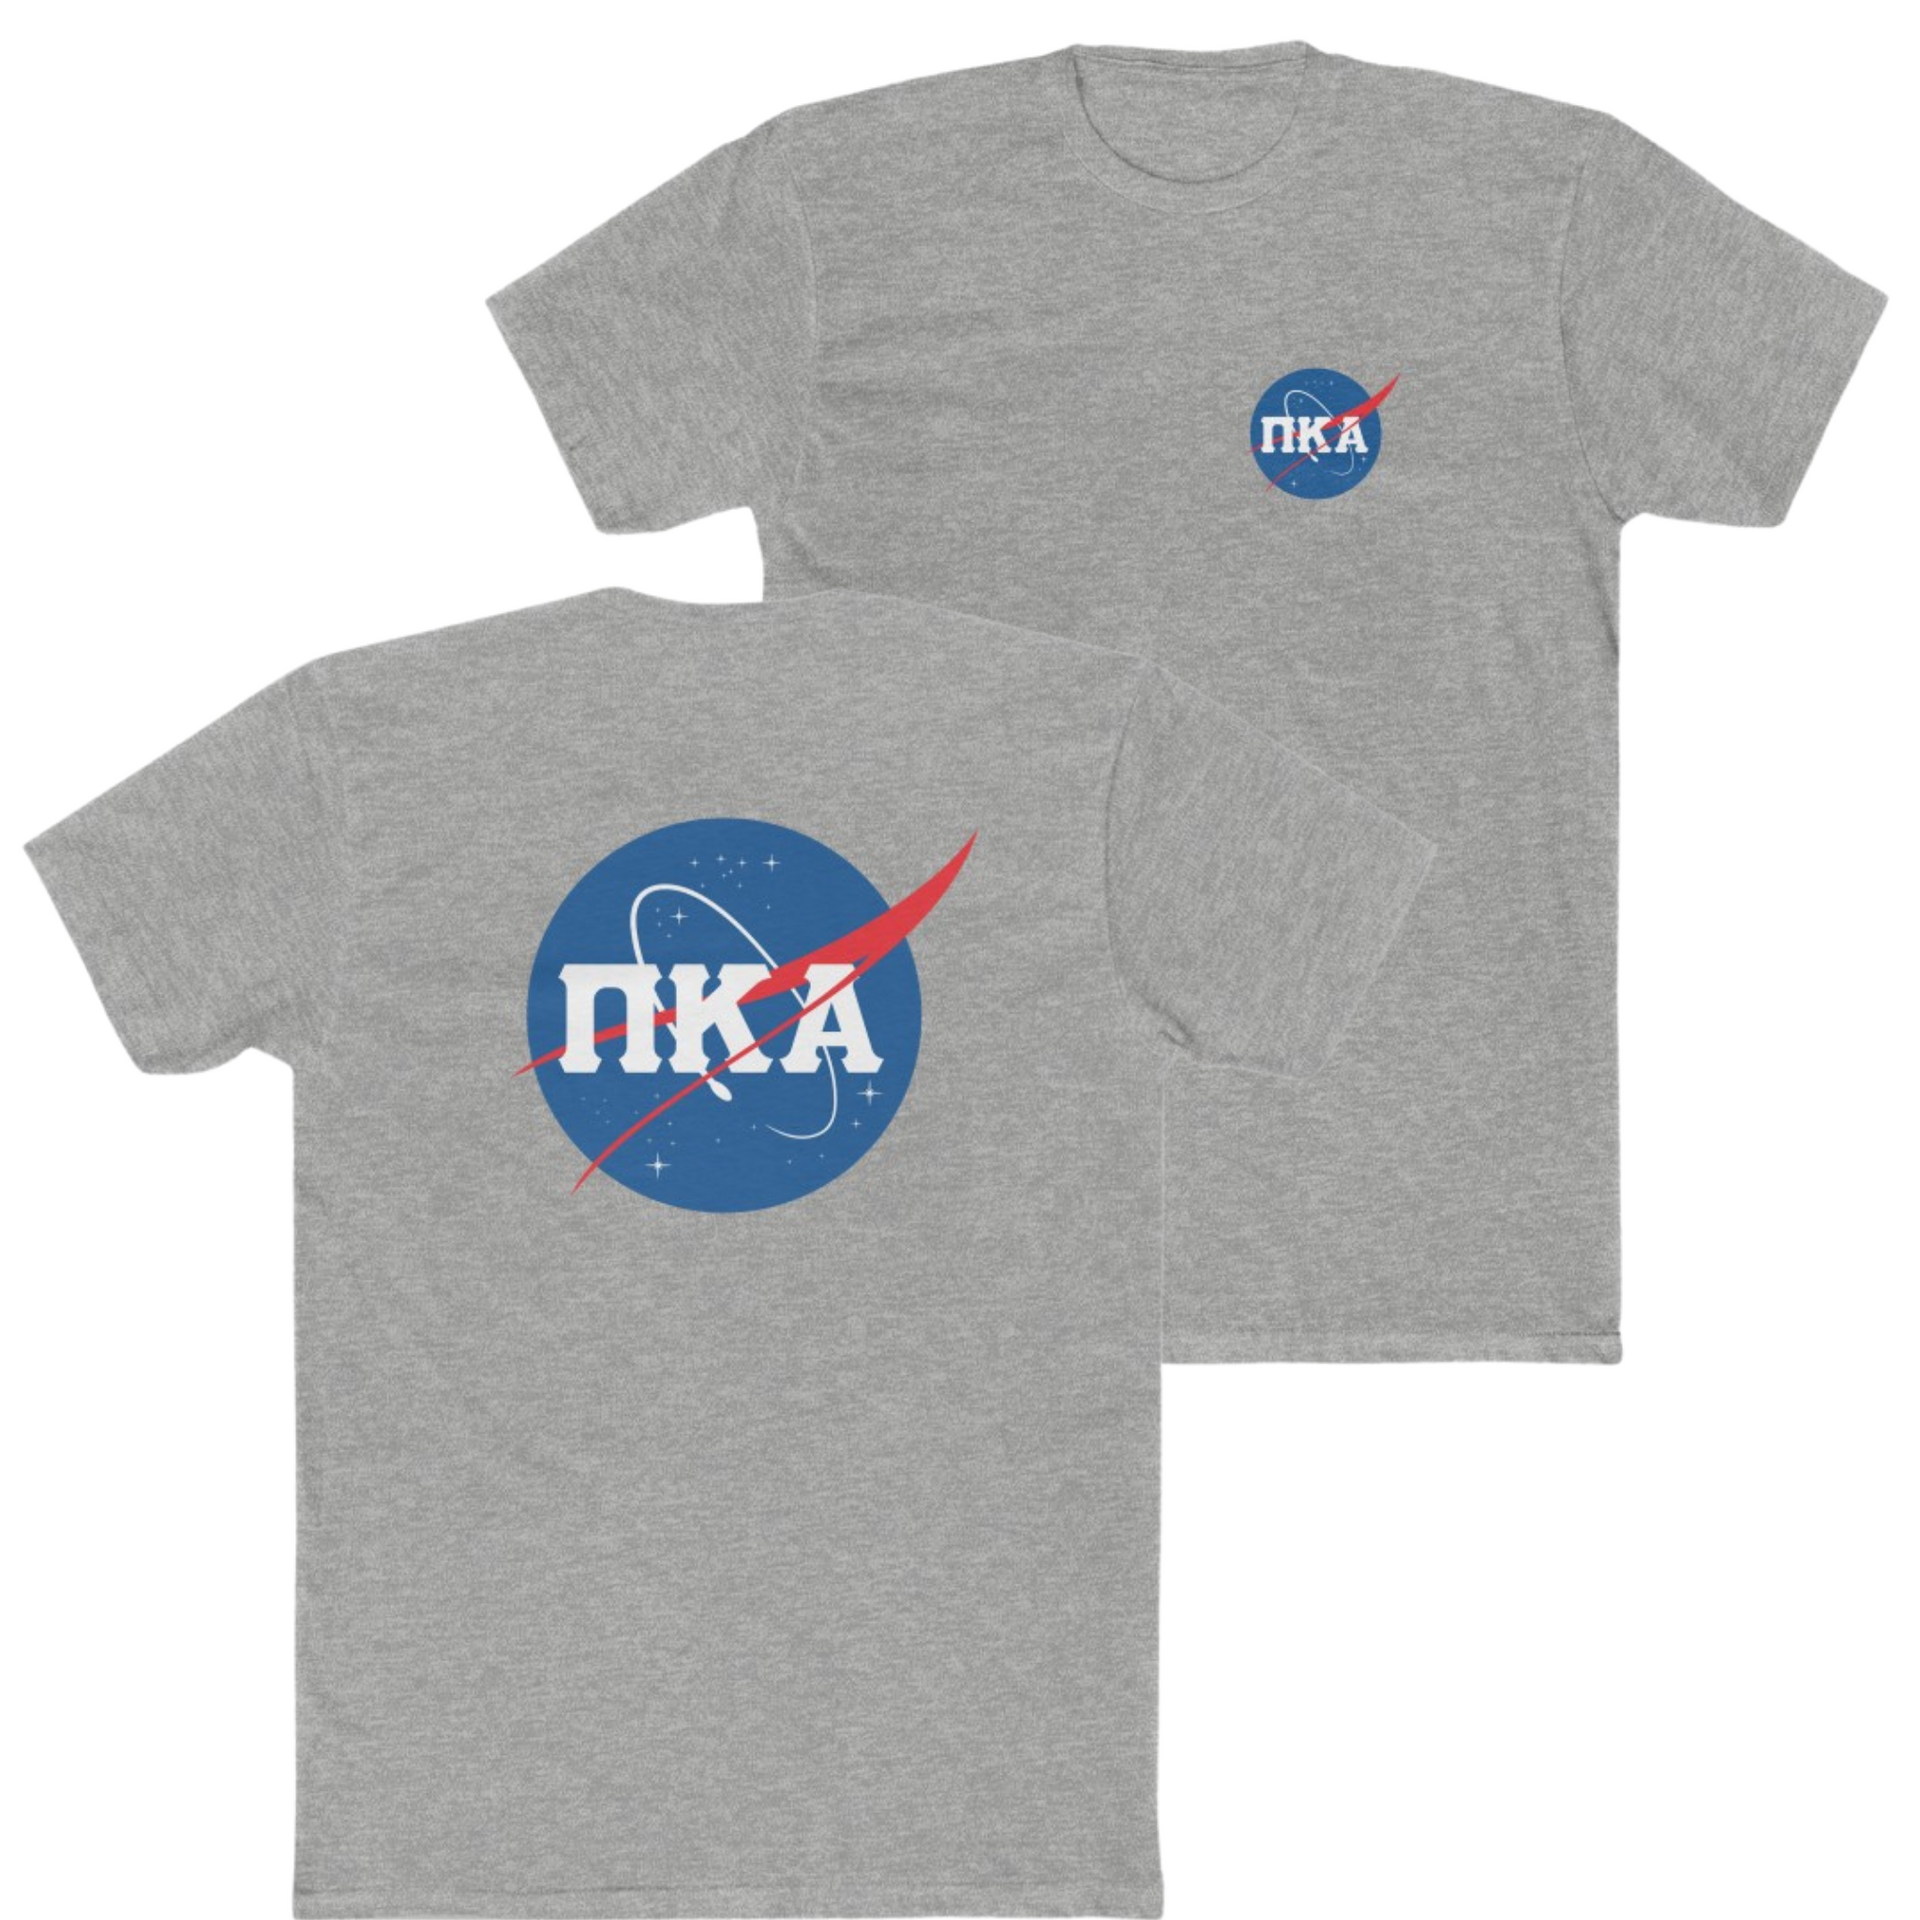 Grey Pi Kappa Alpha Graphic T-Shirt | Nasa 2.0 | Pi kappa alpha fraternity shirt 